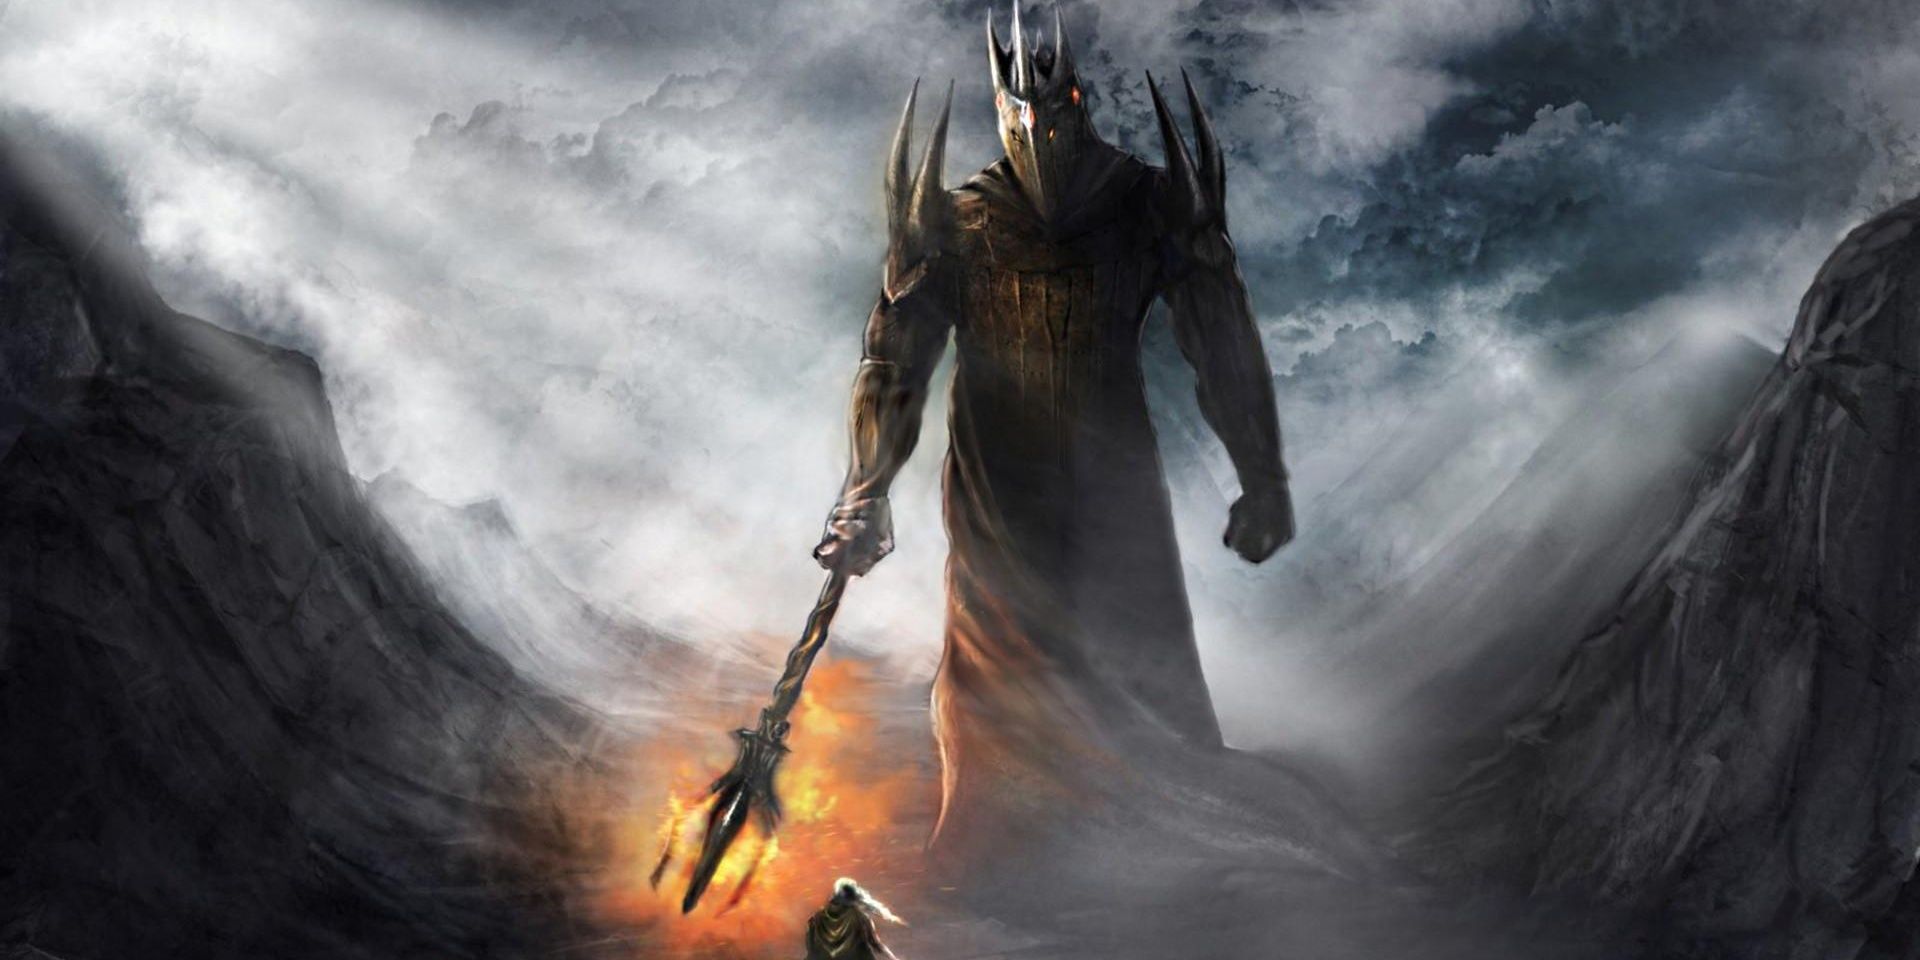 Моргот терроризировал Средиземье задолго до того, как это сделал Саурон во «Властелине колец».